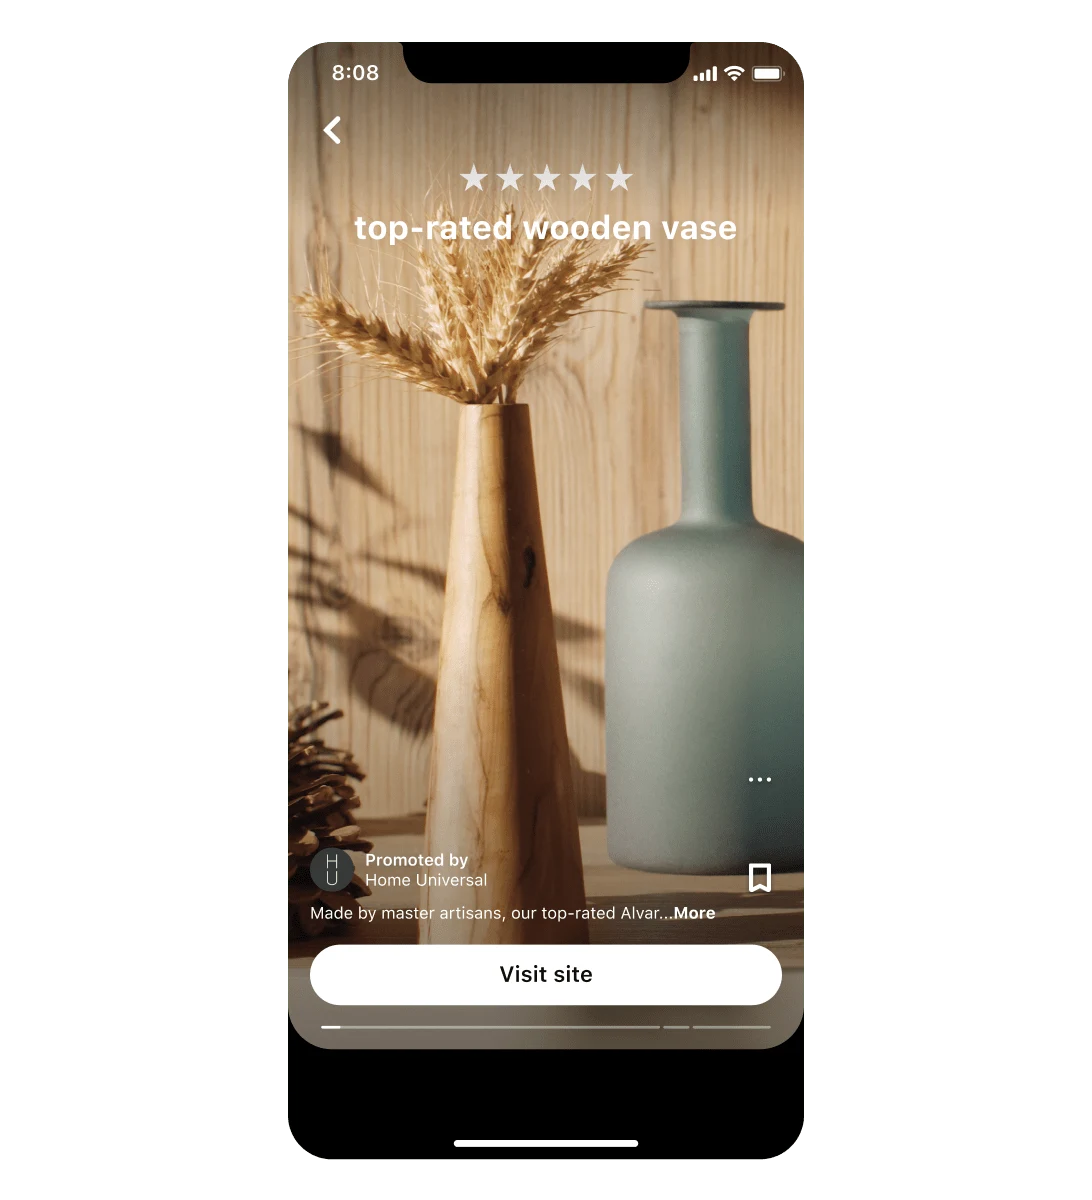 Reklama z pomysłem firmy Home Universal prezentująca ich najwyżej oceniany drewniany wazon, pokazywana na ekranie urządzenia mobilnego.Na górze widoczna jest pięciogwiazdkowa ocena.